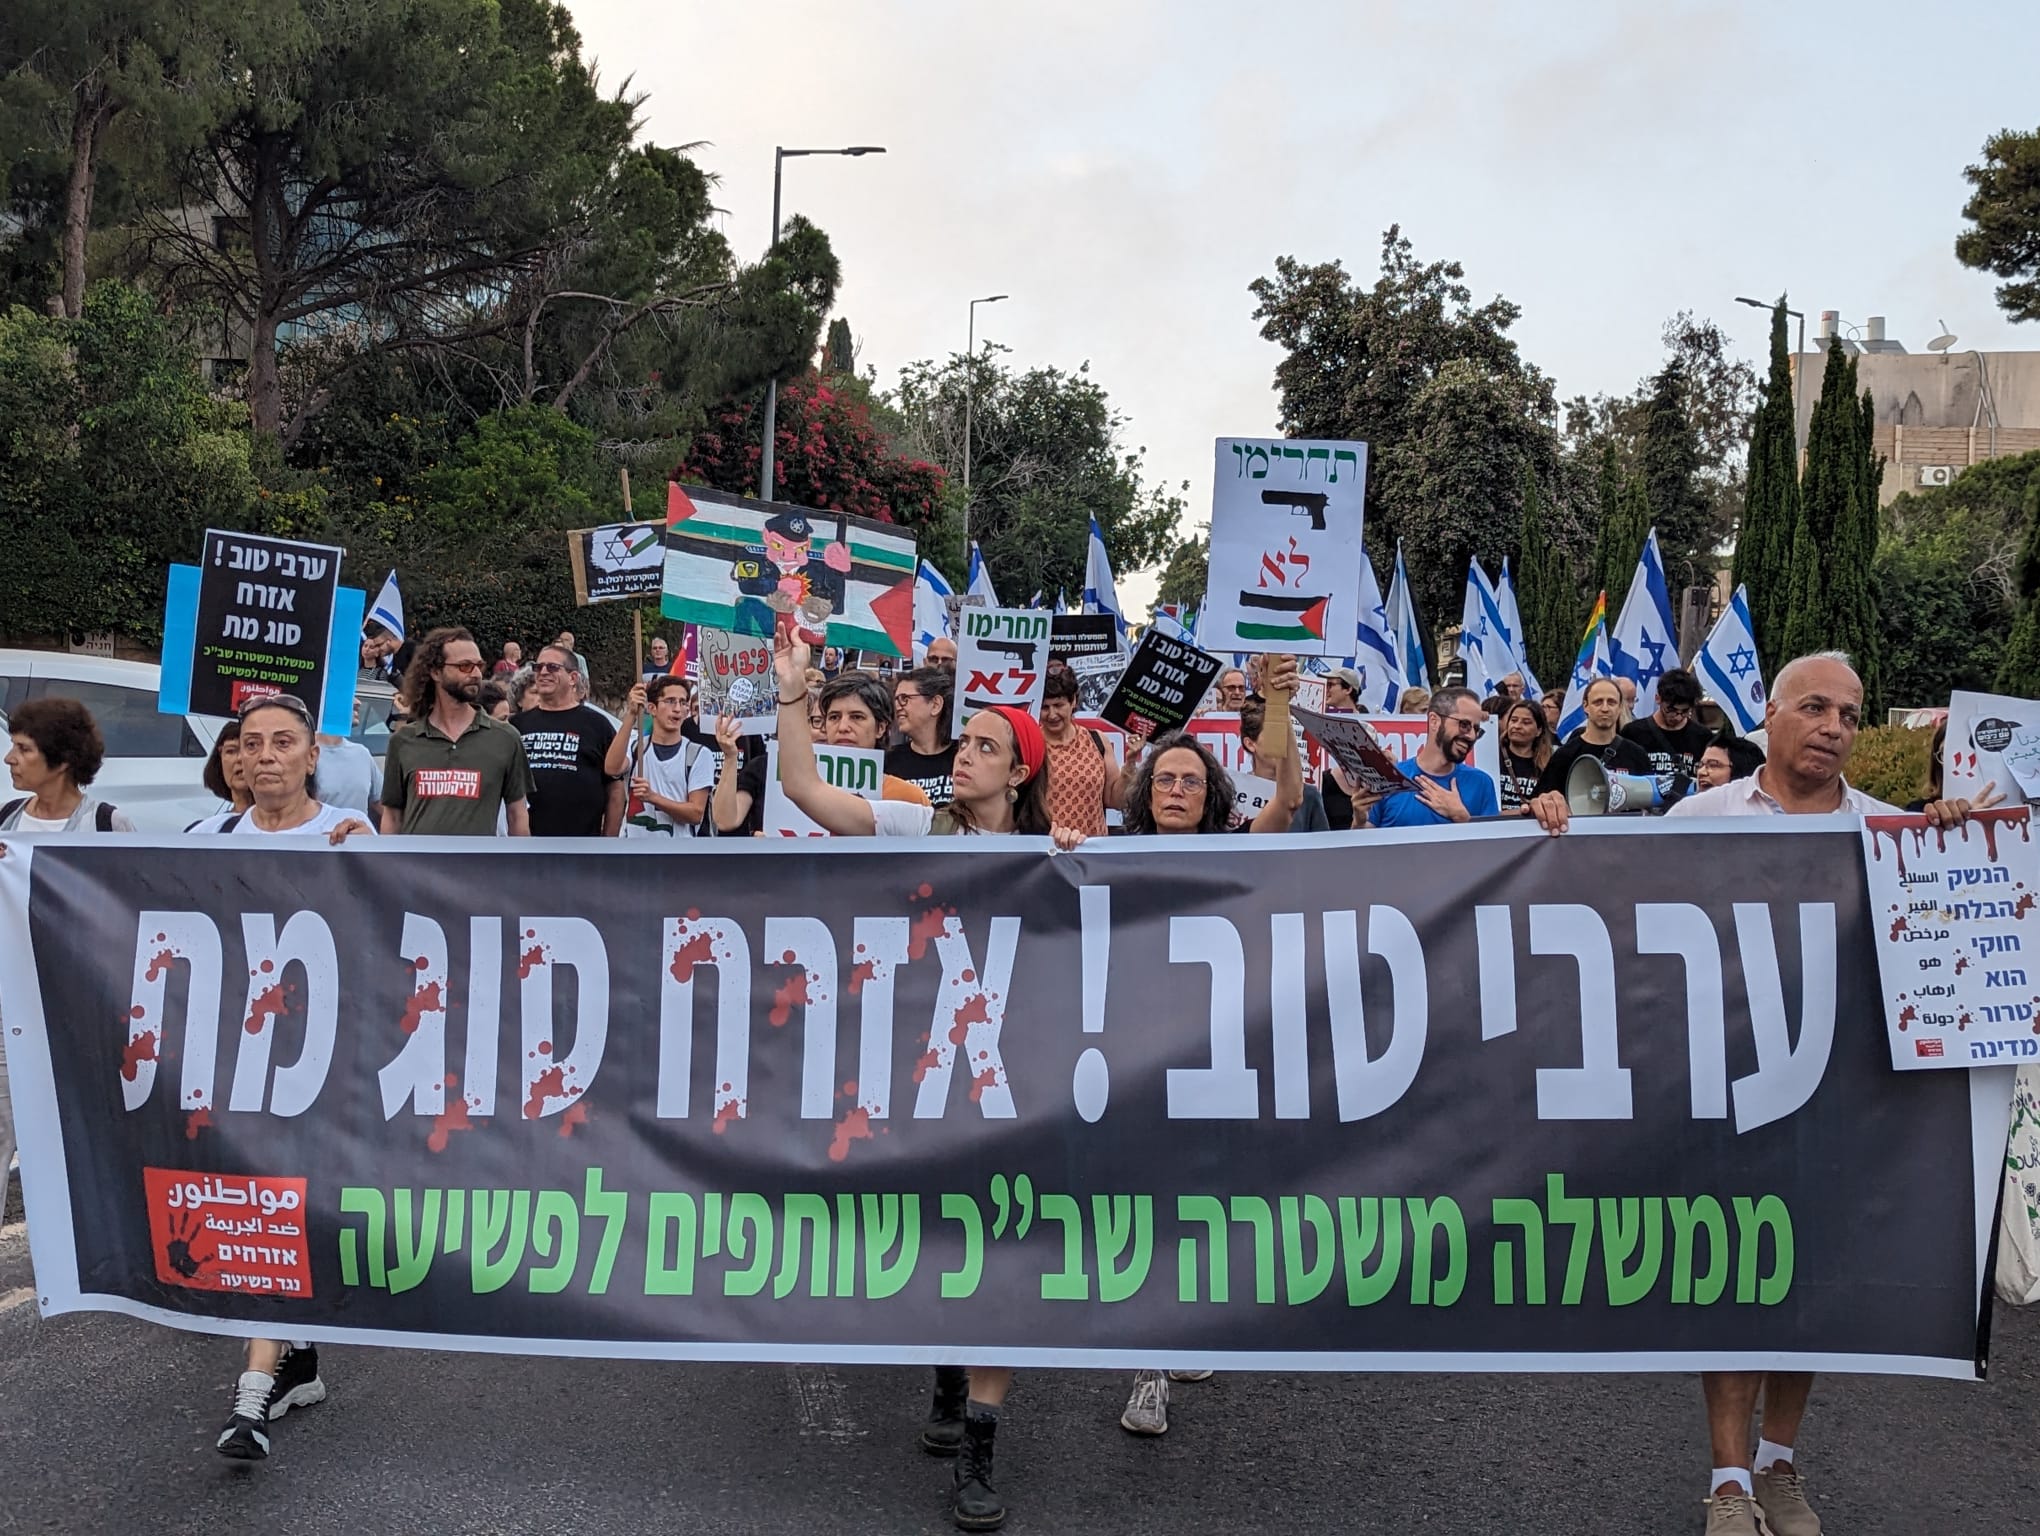 סלים עבאס (מימין למעלה) במחאה נגד הפשיעה, בהובלת "אזרחים נגד פשיעה ואלימות" (צילום: באדיבות המצולם)